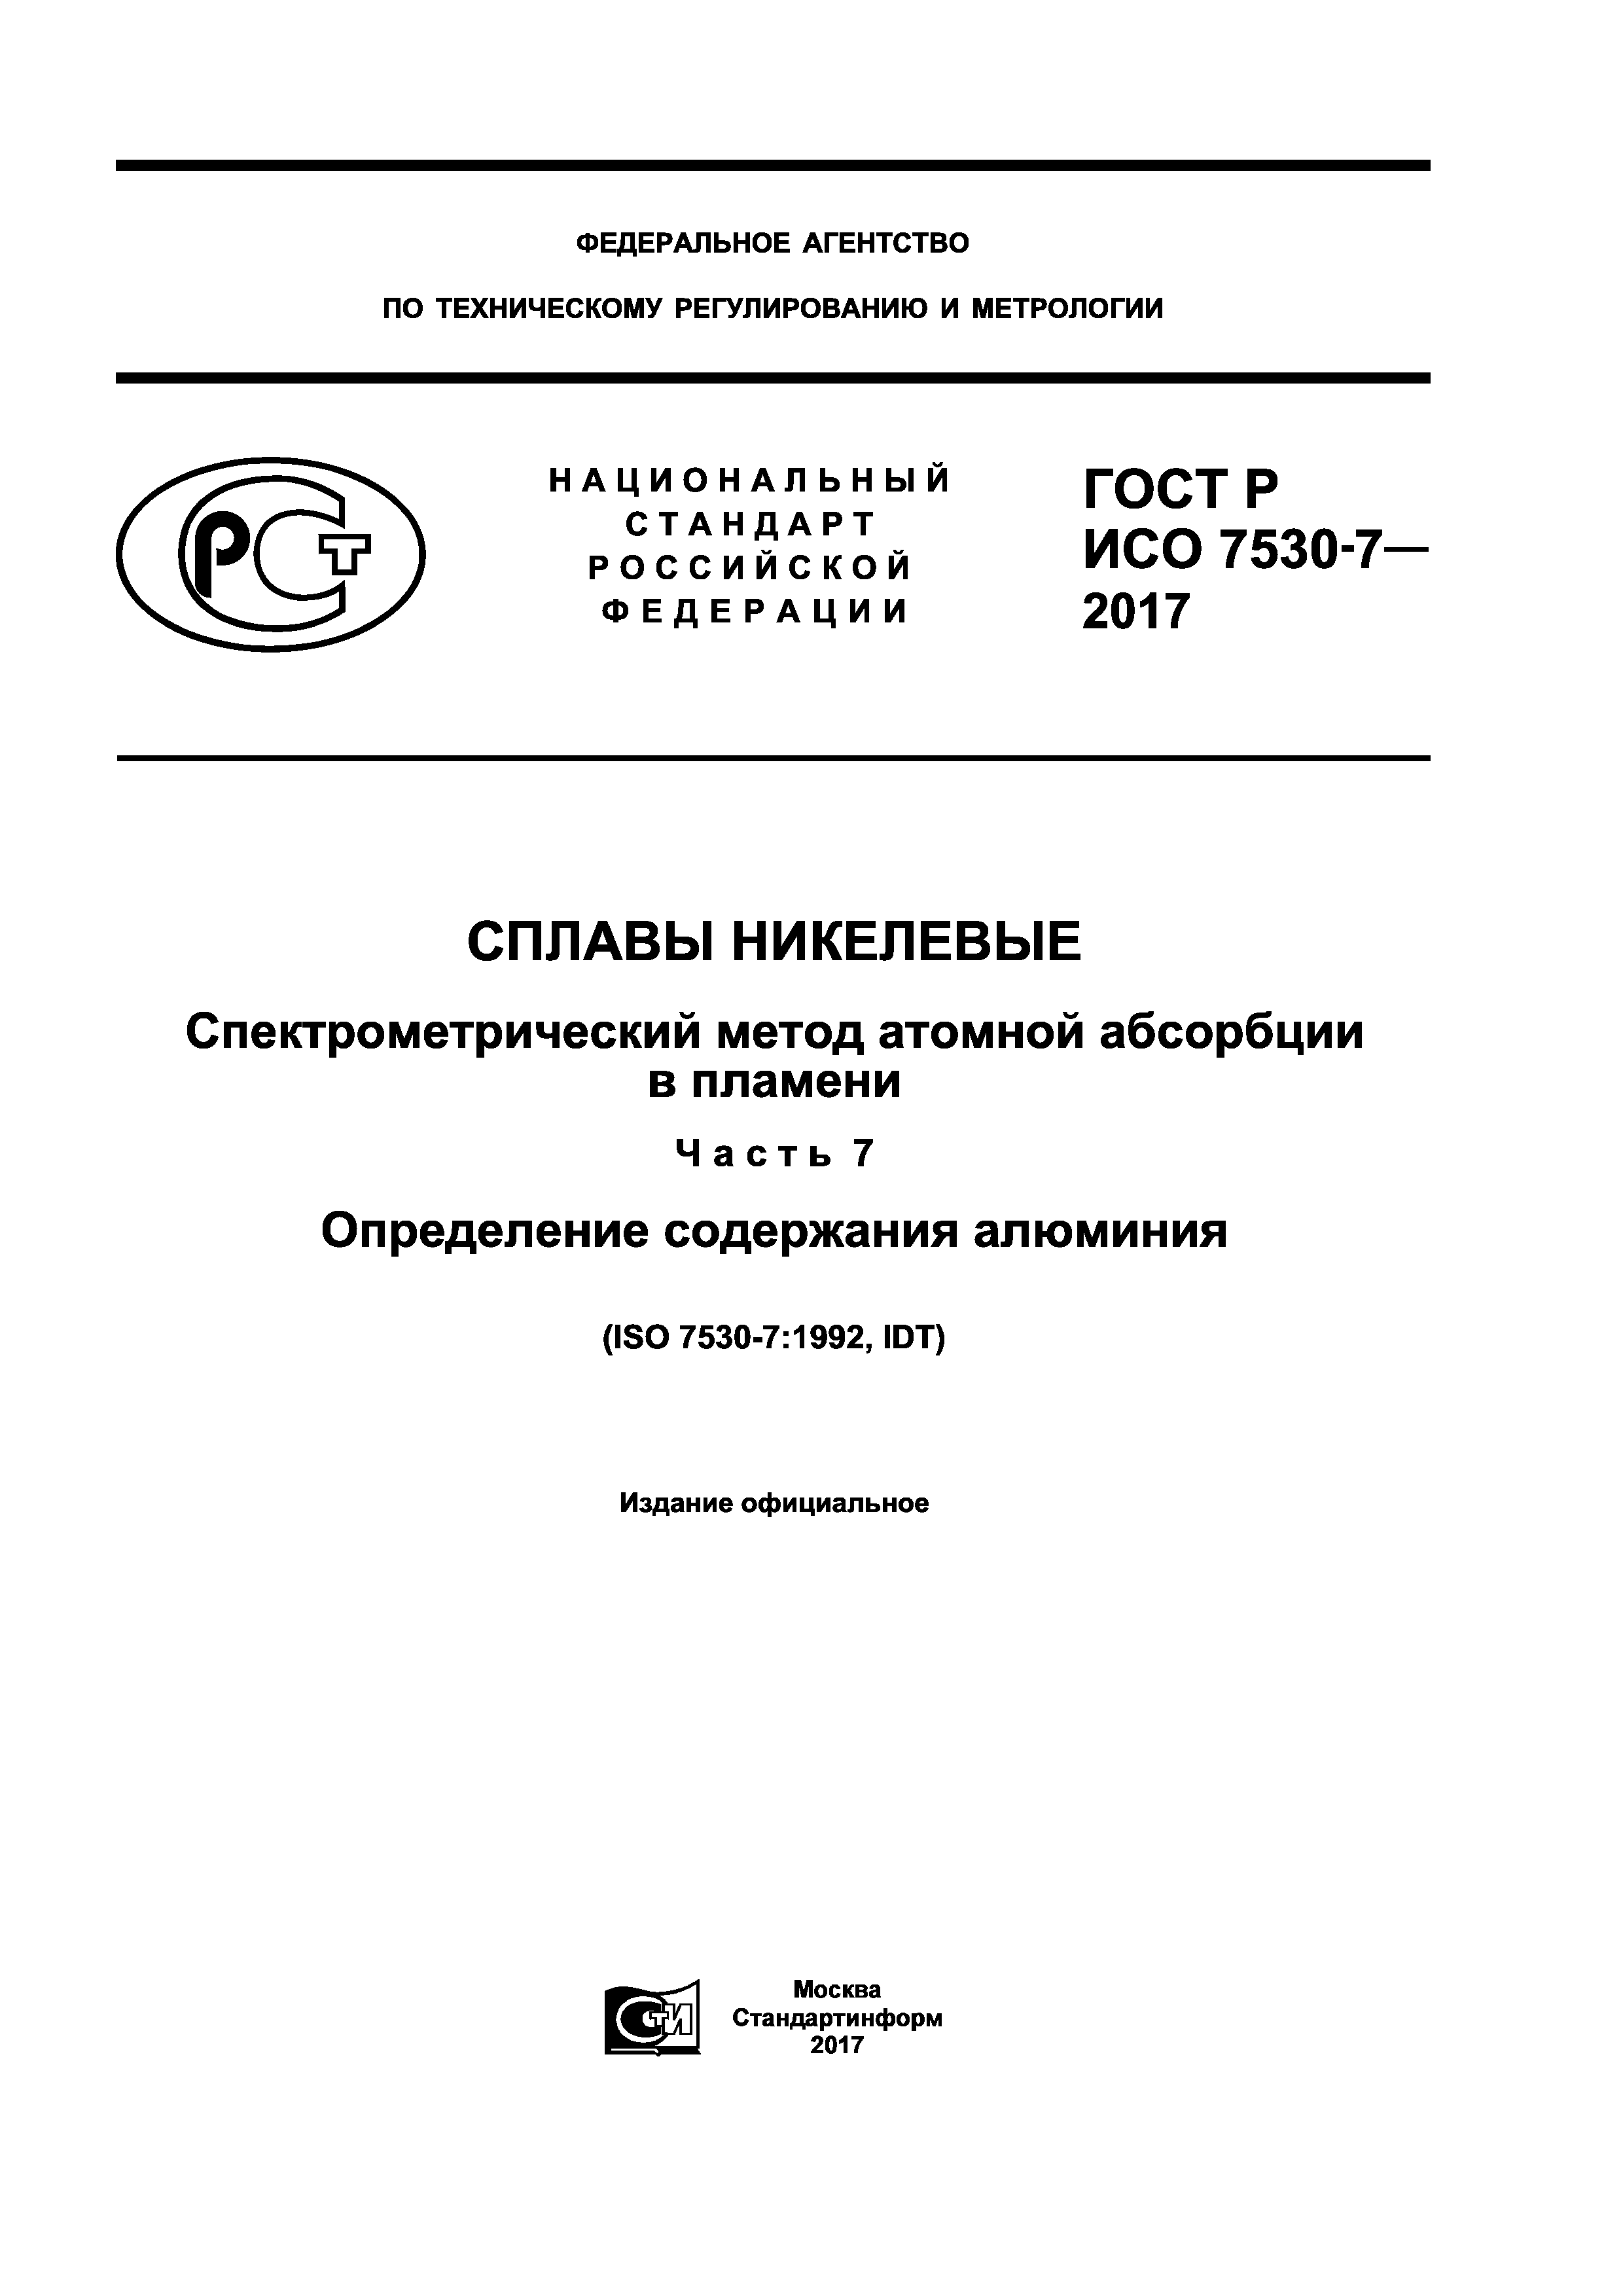 ГОСТ Р ИСО 7530-7-2017